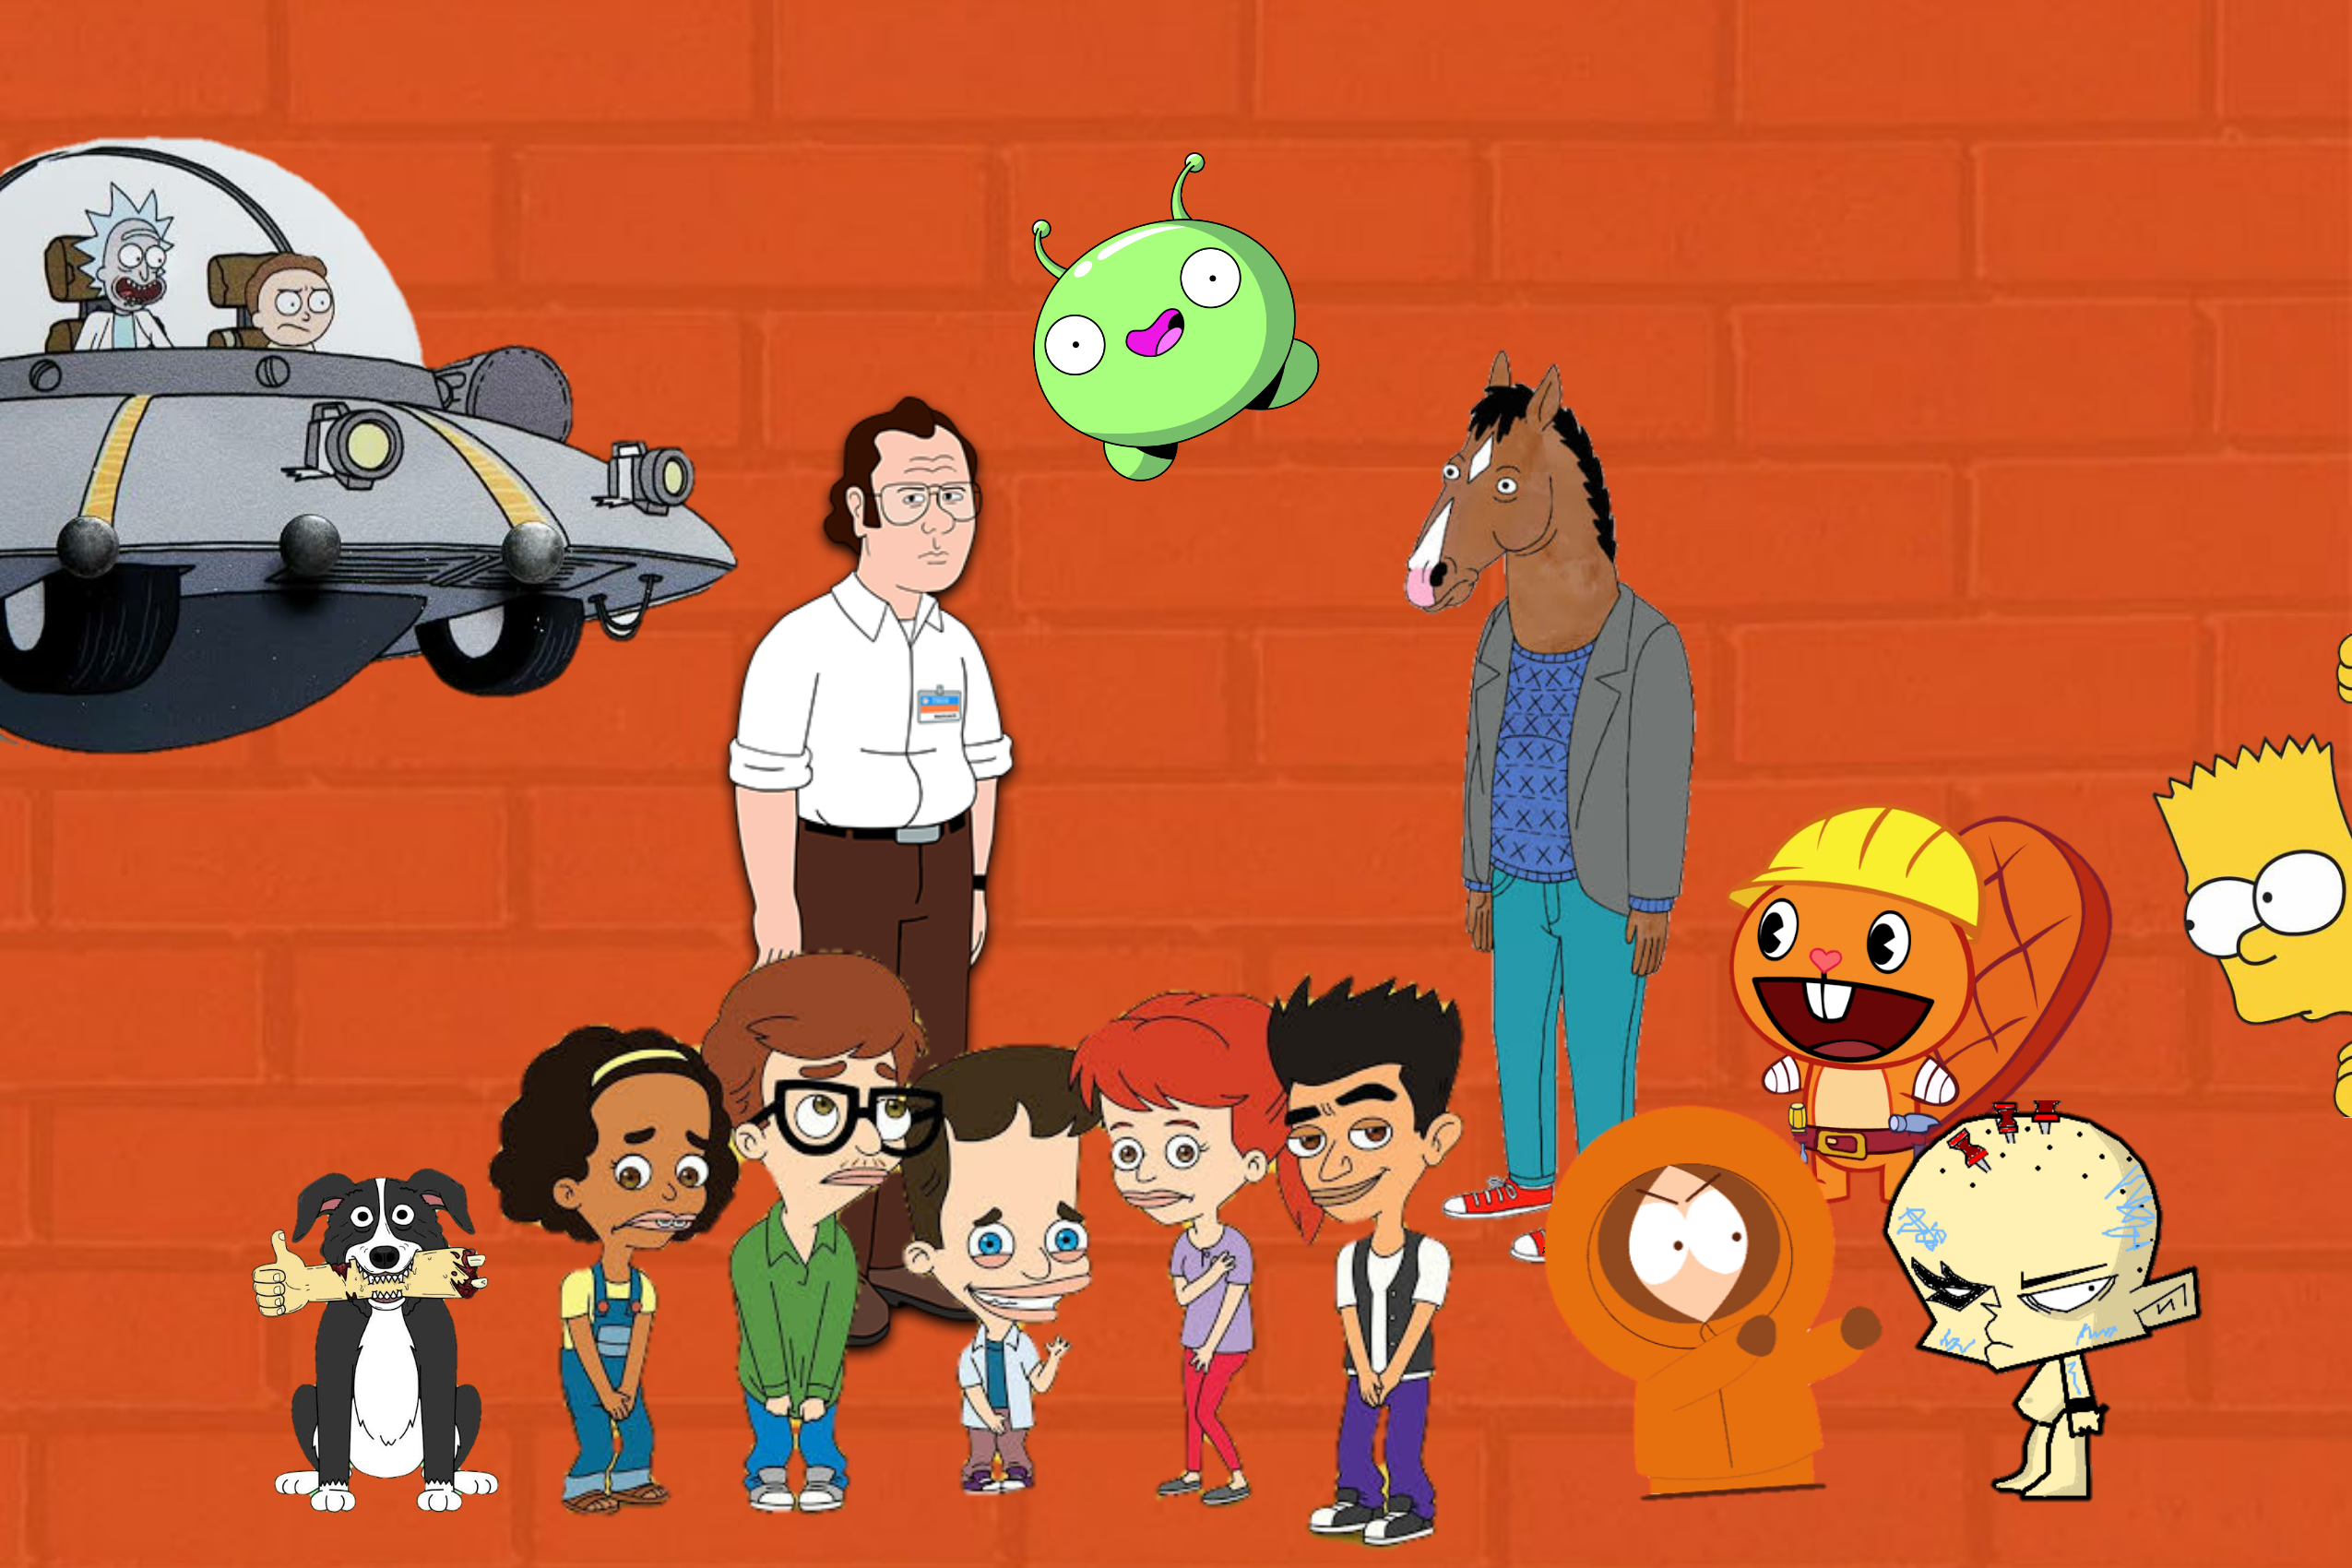 7 animações adultas para ver na HBO Max